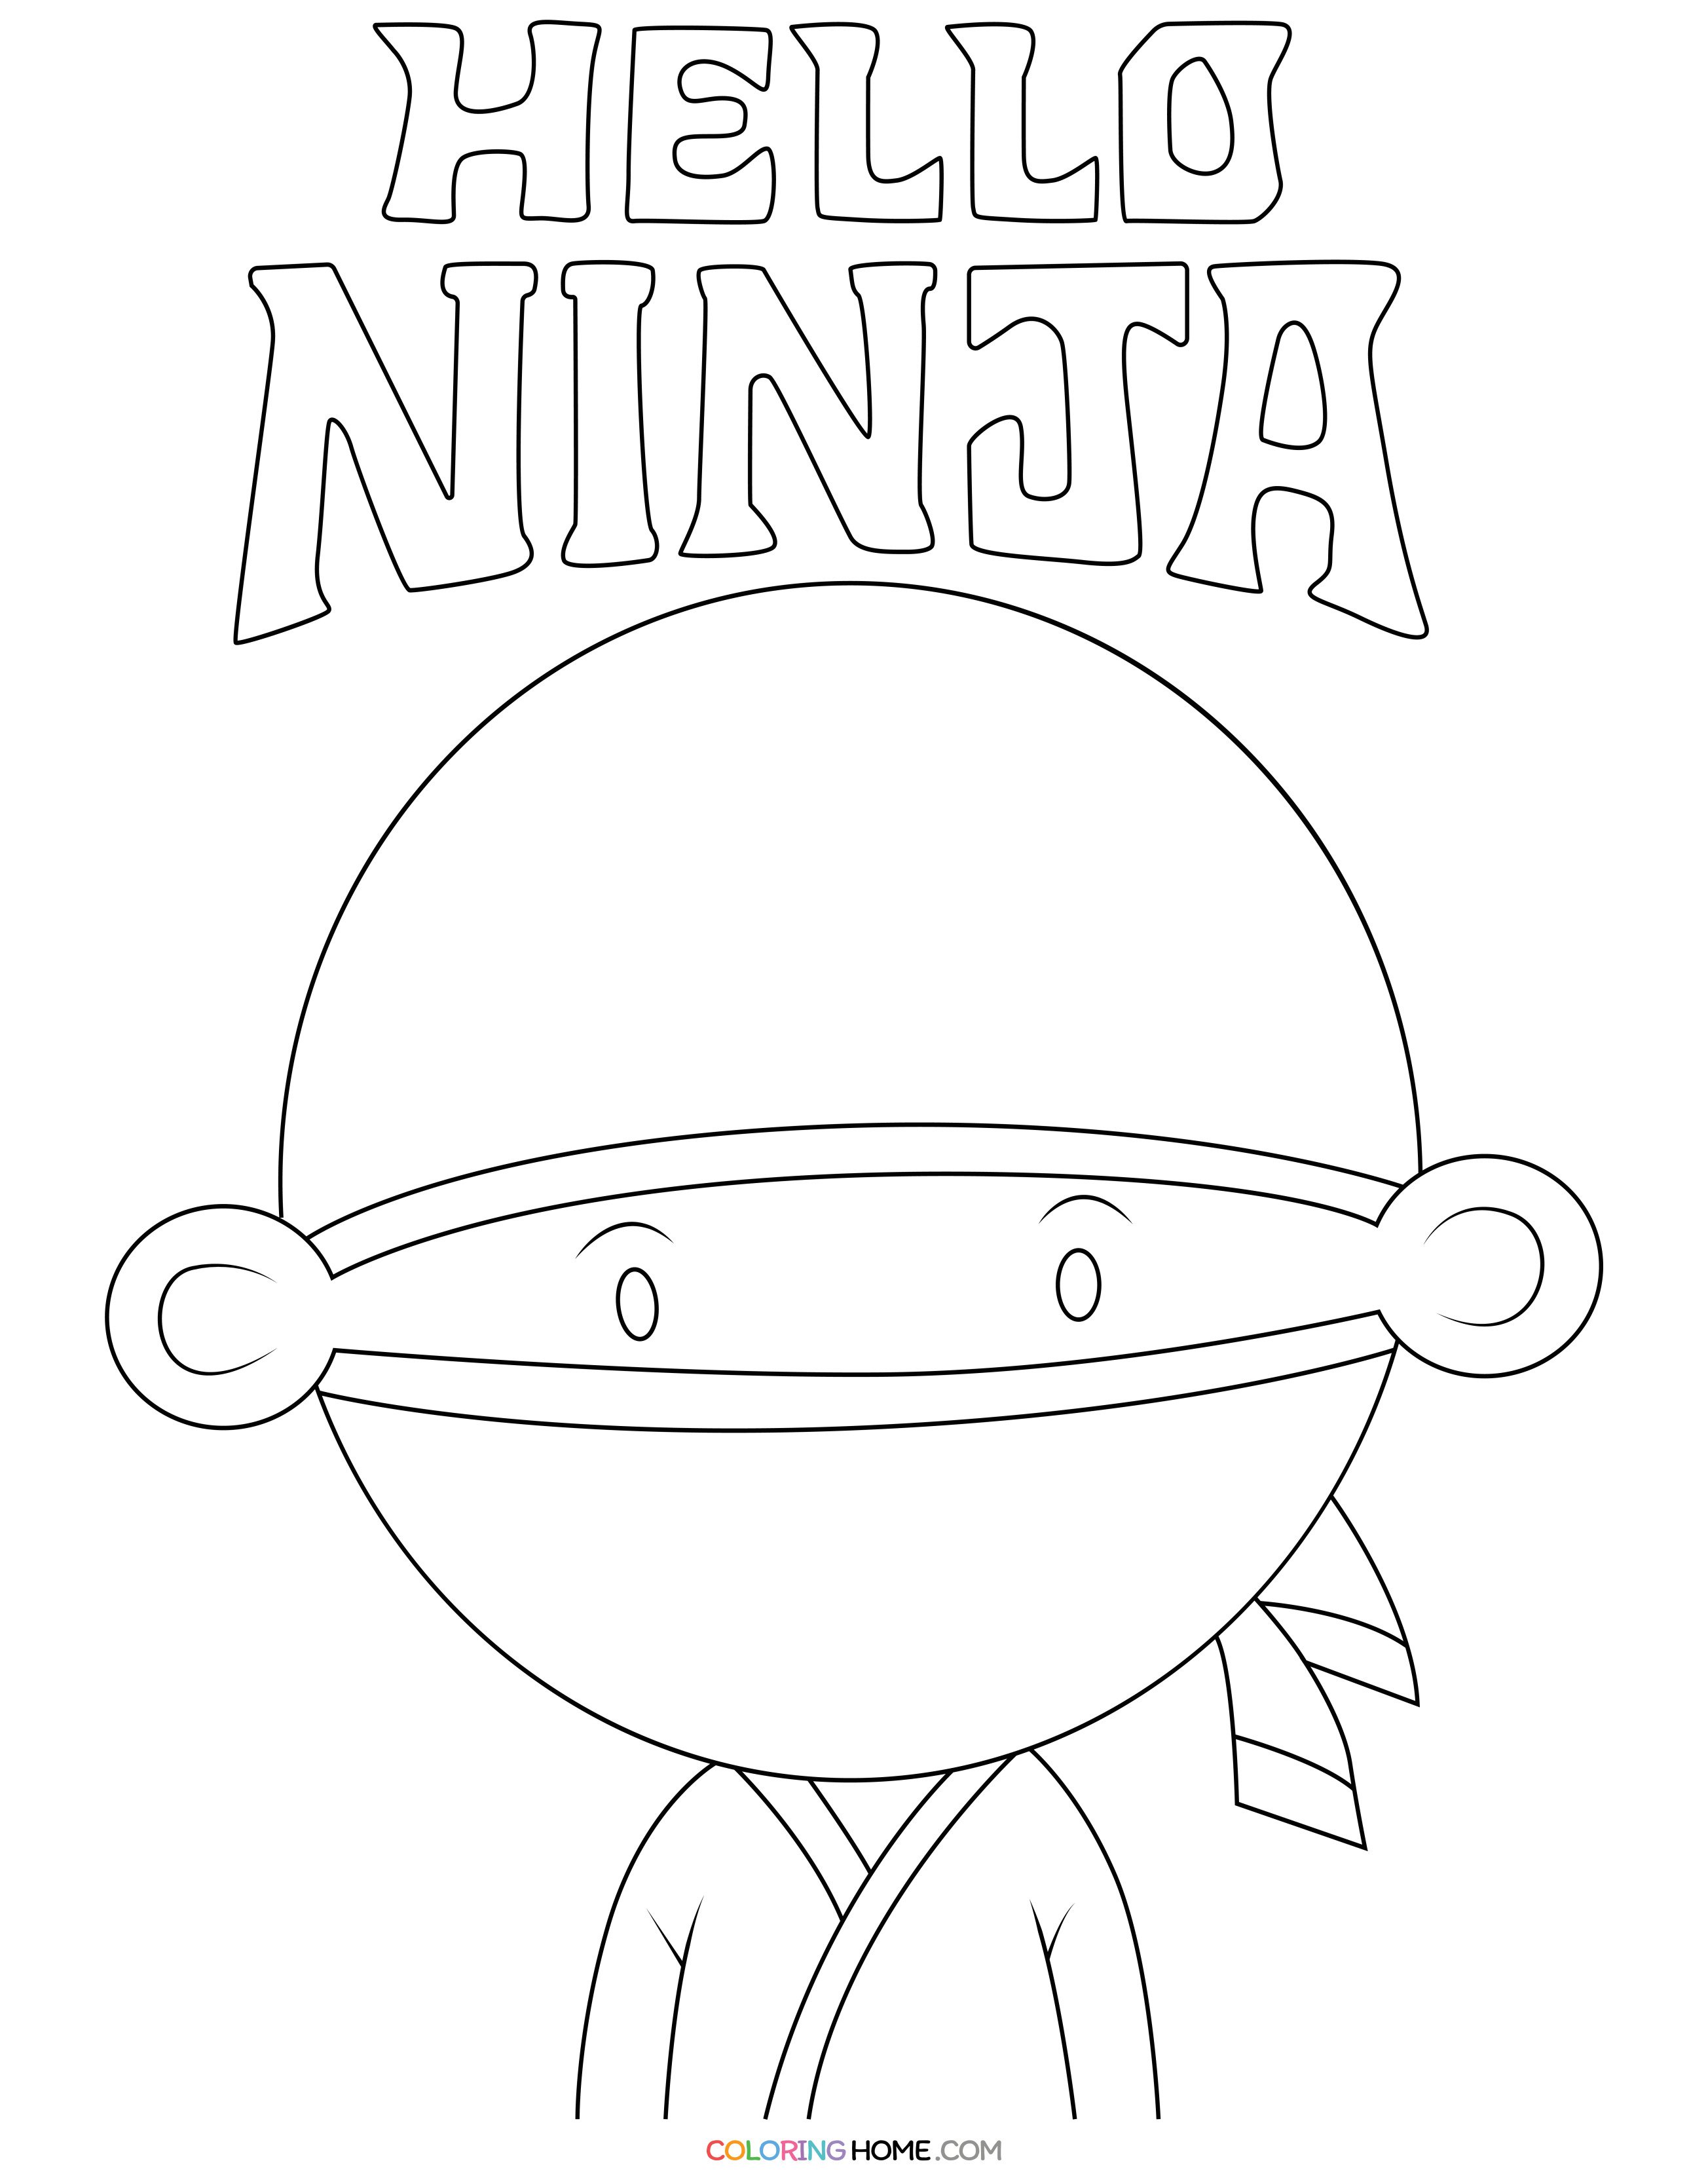 Hello Ninja coloring page